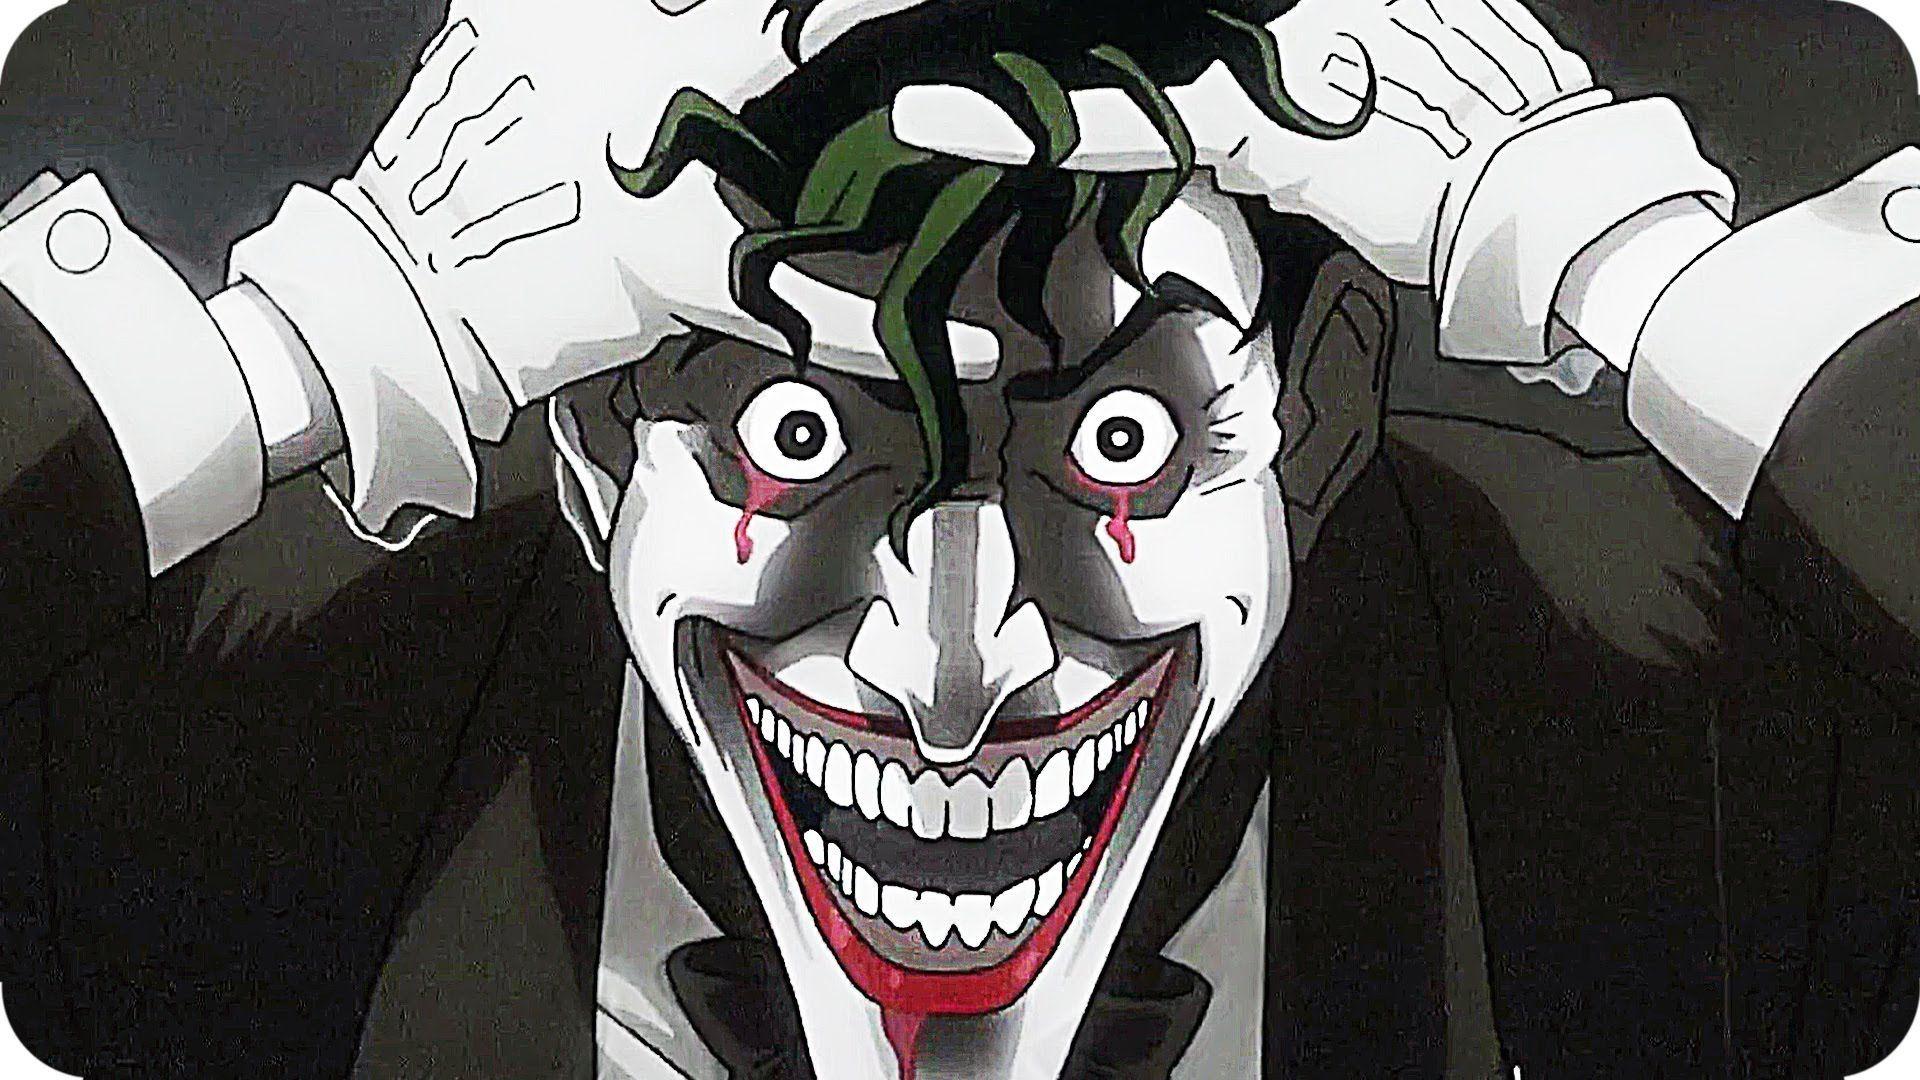  Joker  Killing  Joke  4K Ultra HD Wallpapers  Top Free Joker  